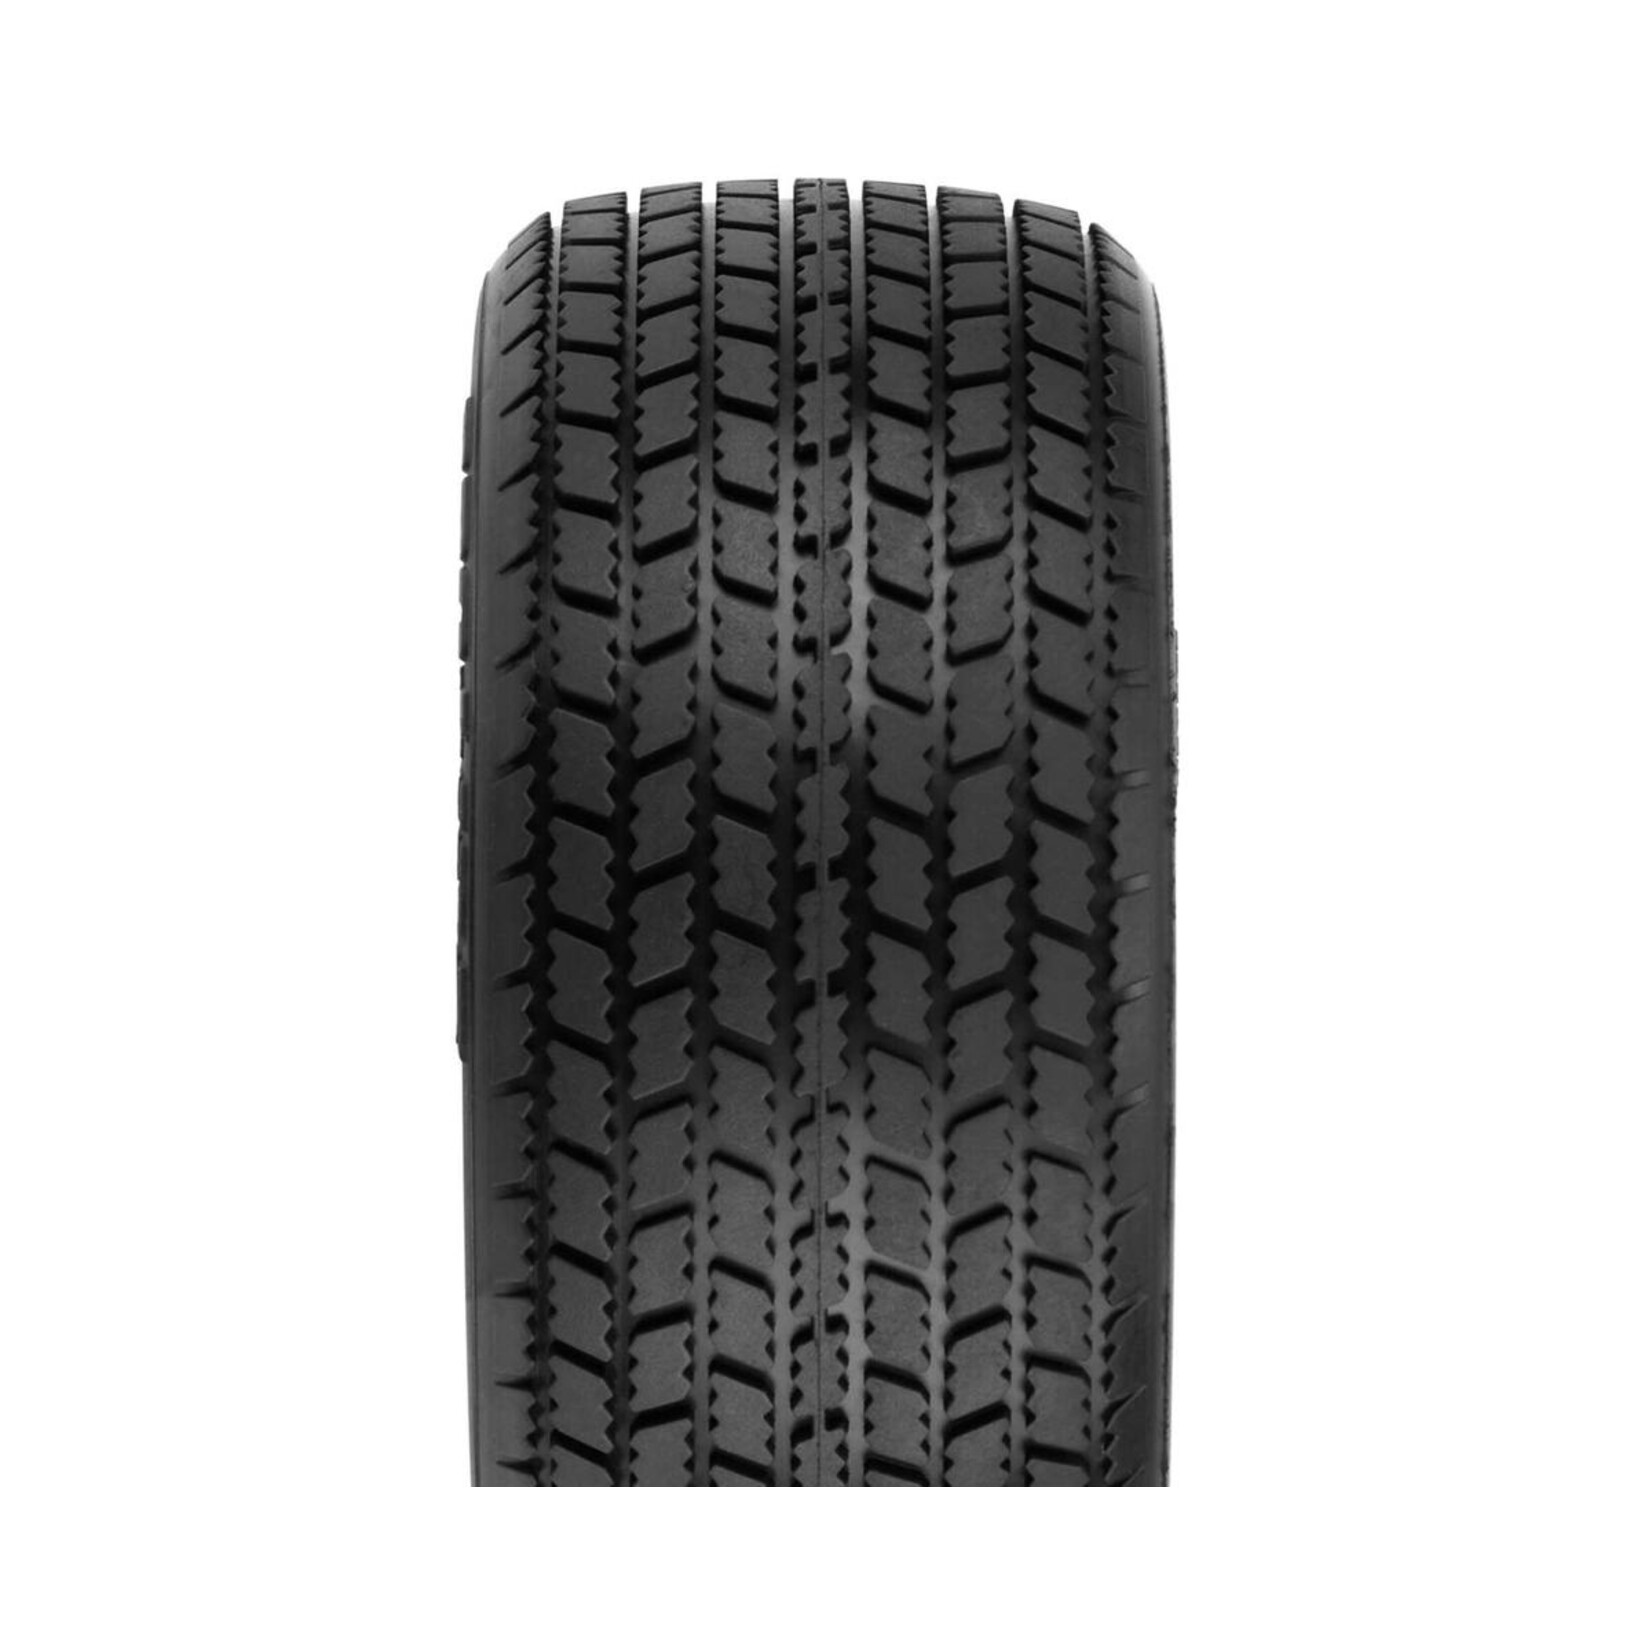 Pro-Line Pro-Line Hoosier G60 SC 2.2/3.0" Dirt Oval SC Mod Tires (2) (M4) #10153-03